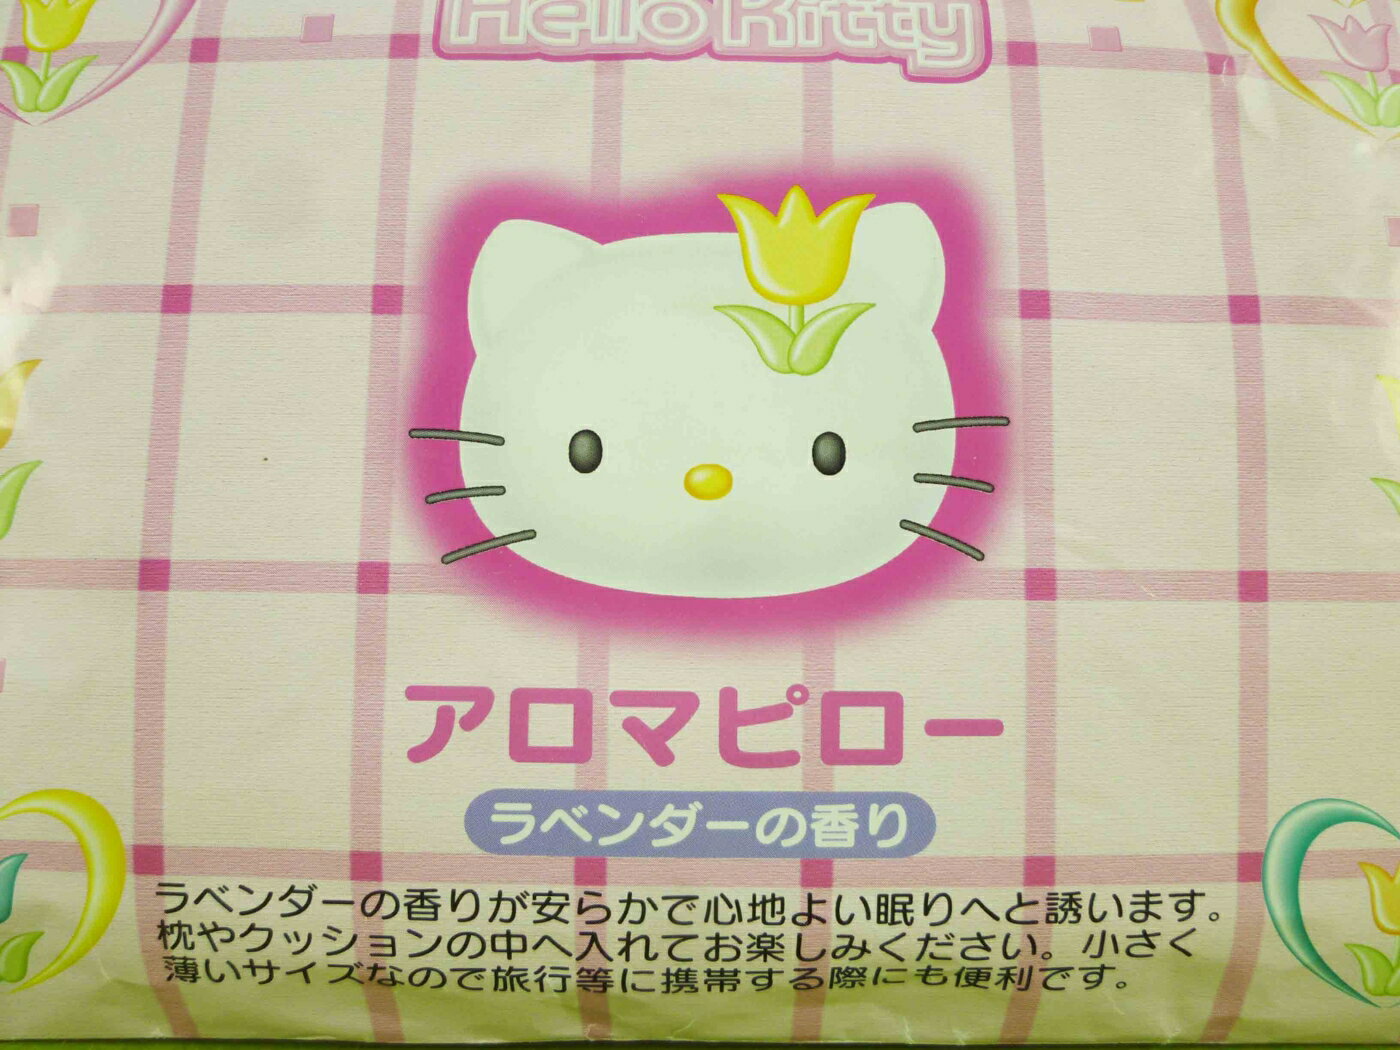 【震撼精品百貨】Hello Kitty 凱蒂貓 枕頭助眠香包【共1款】 震撼日式精品百貨 1